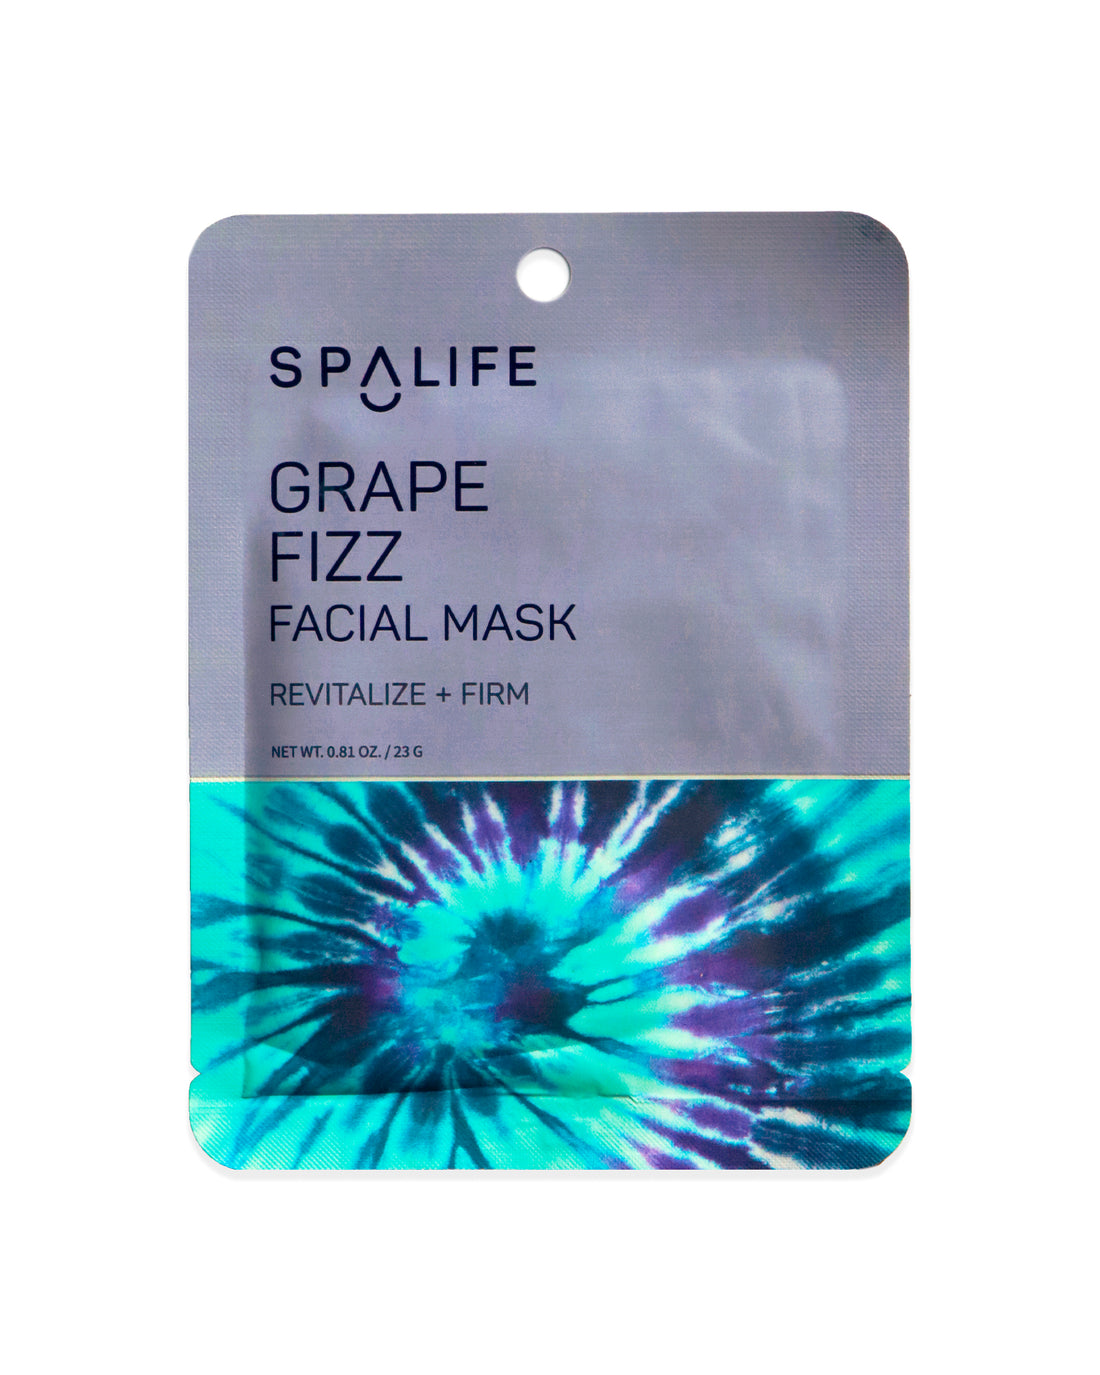 Grape_fizz_facial_mask_packet-740